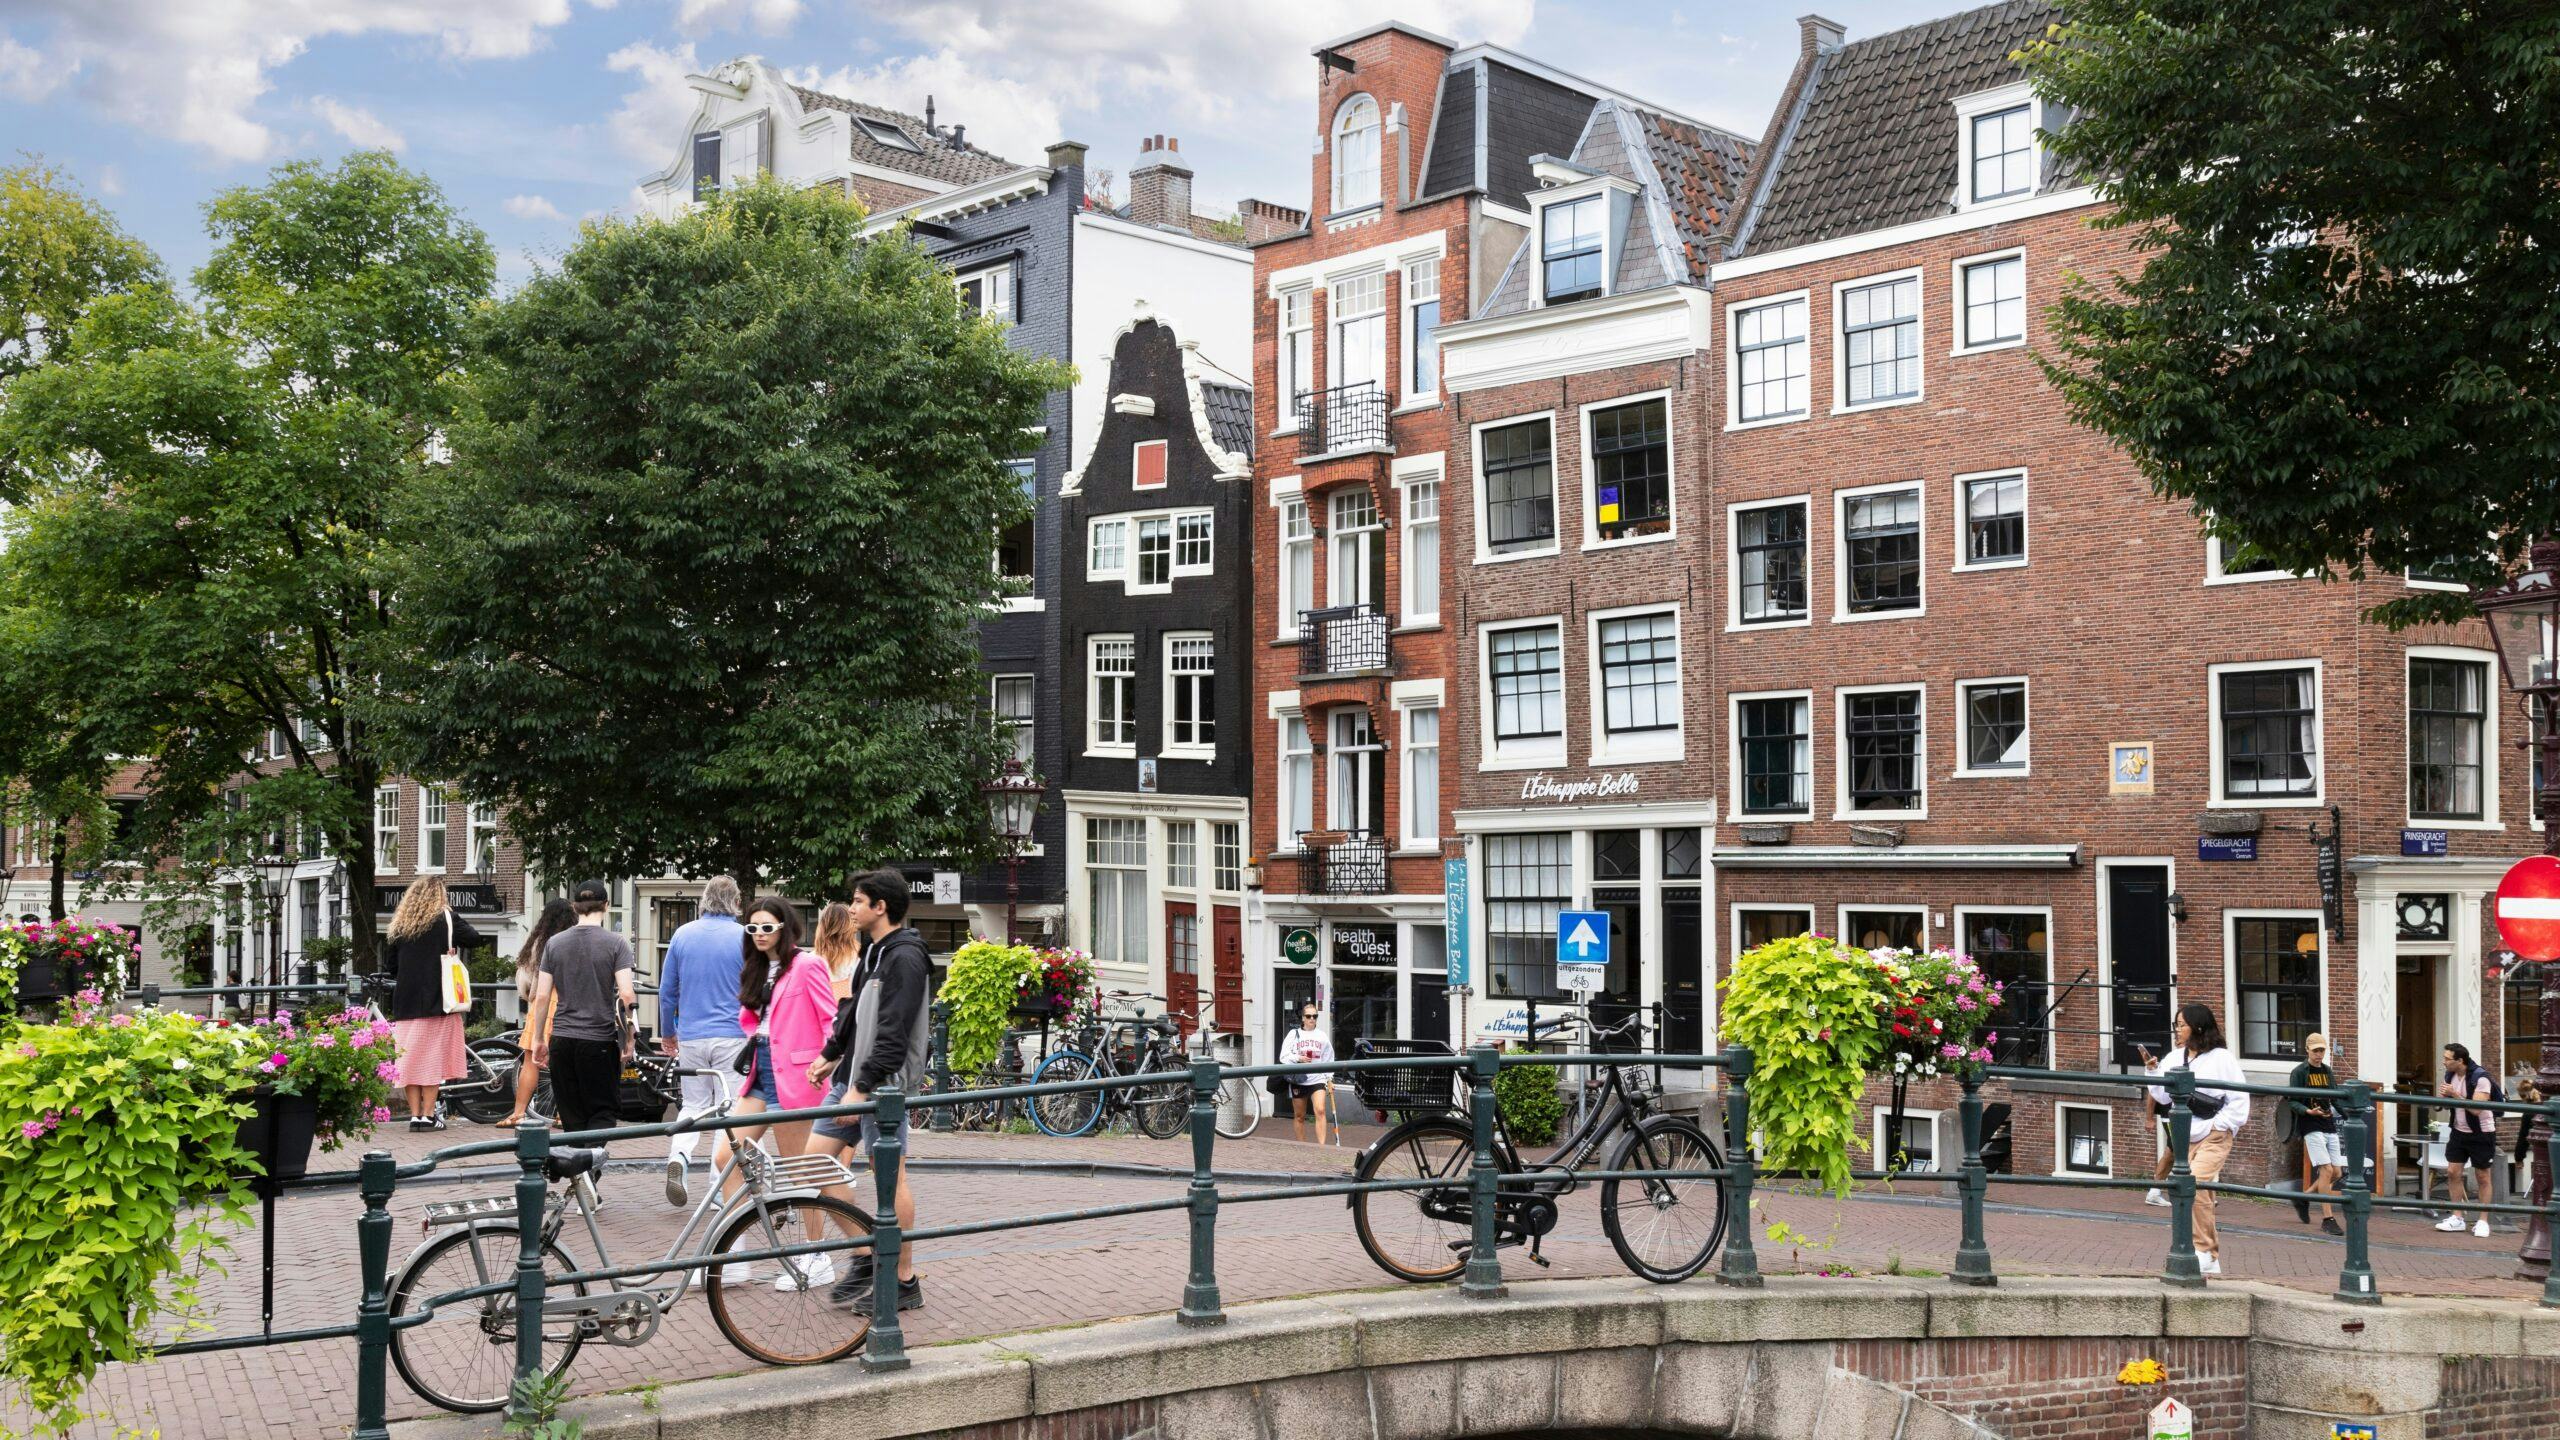 Wie in het centrum van Amsterdam wil wonen moet of veel betalen, of genoegen nemen met een kleine woning, vindt Coen Teulings. 